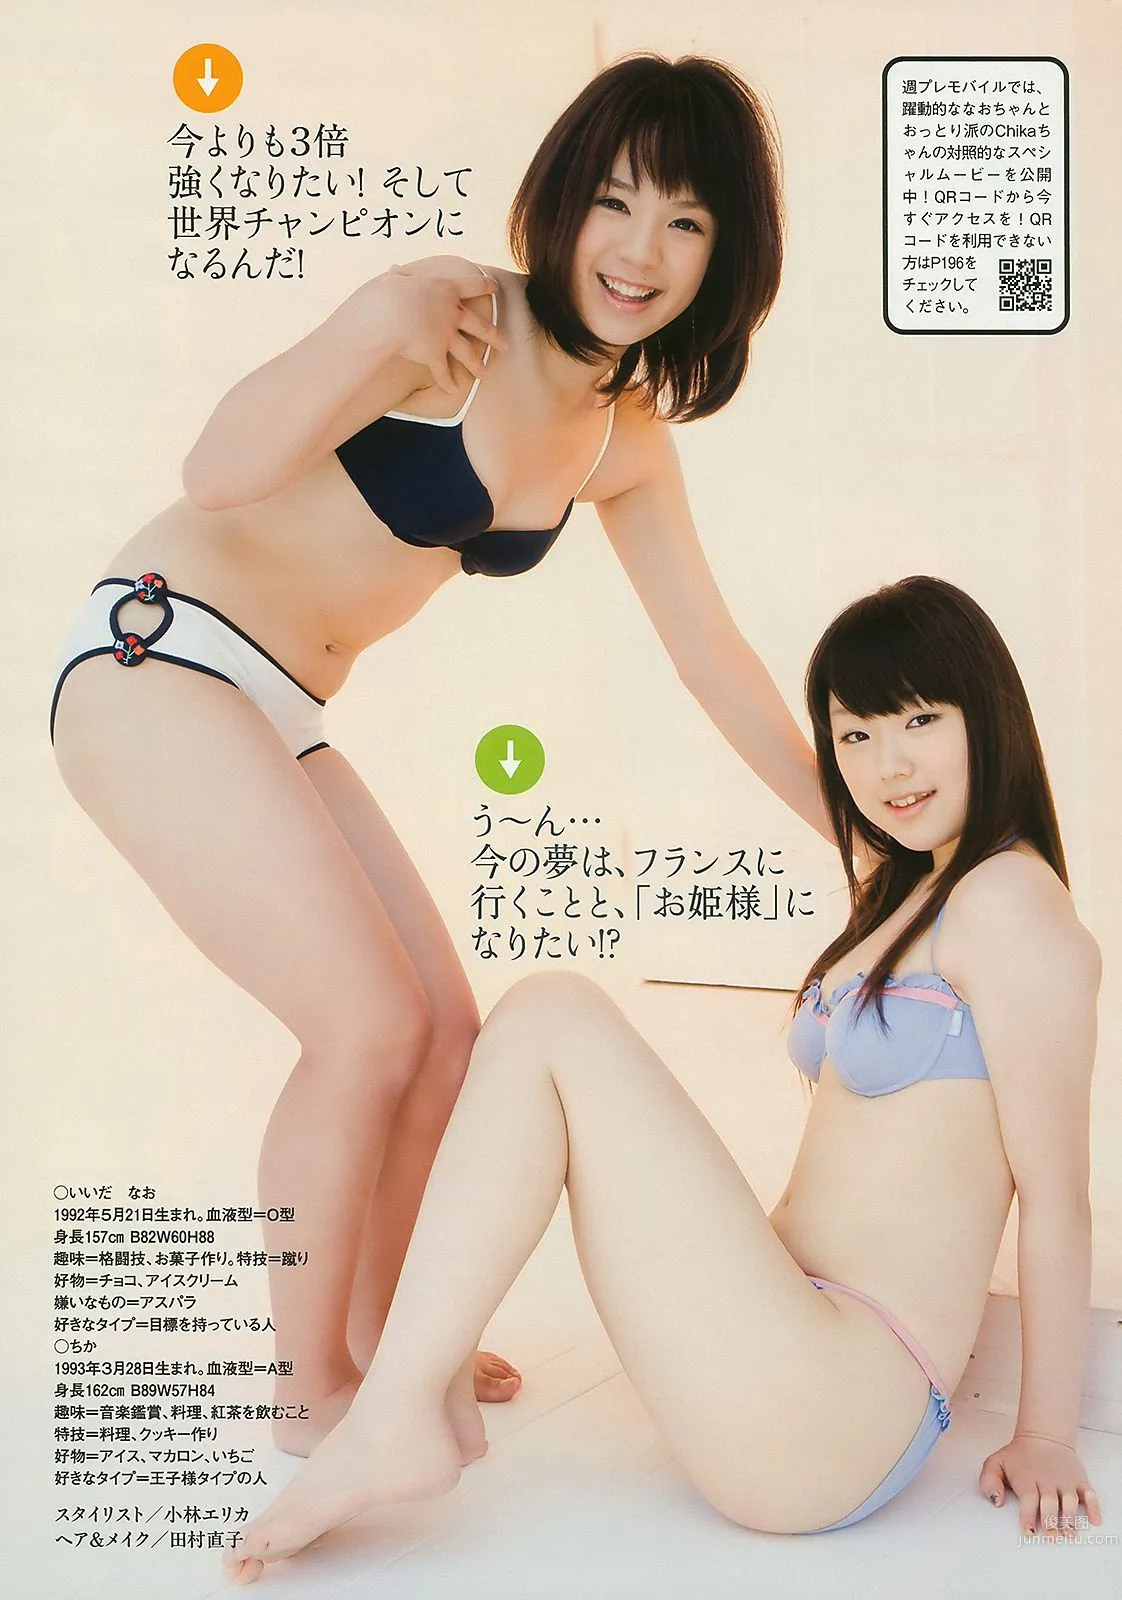 優木まおみ 松井玲奈 瀬尾秋子 東江梨加 夏菜 [Weekly Playboy] 2010年No.21 写真杂志34